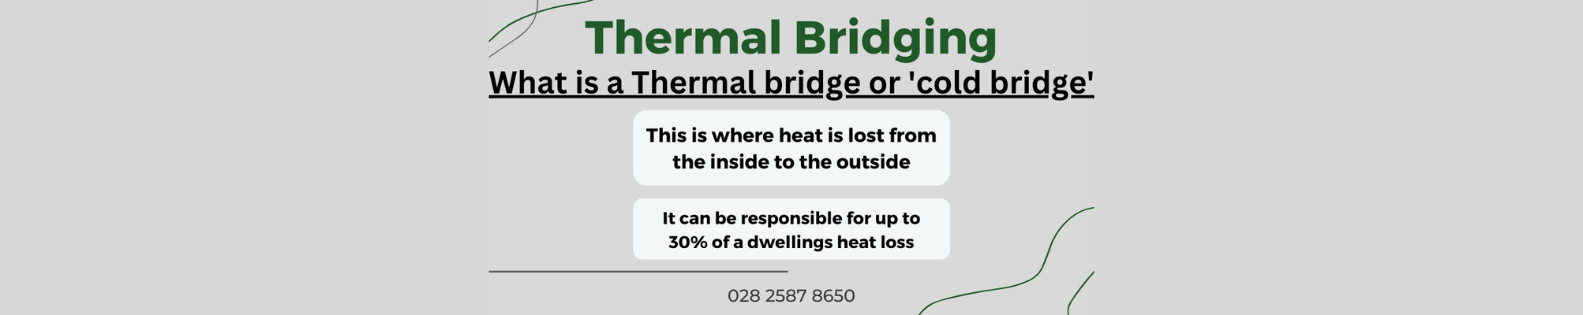 thermal bridging 